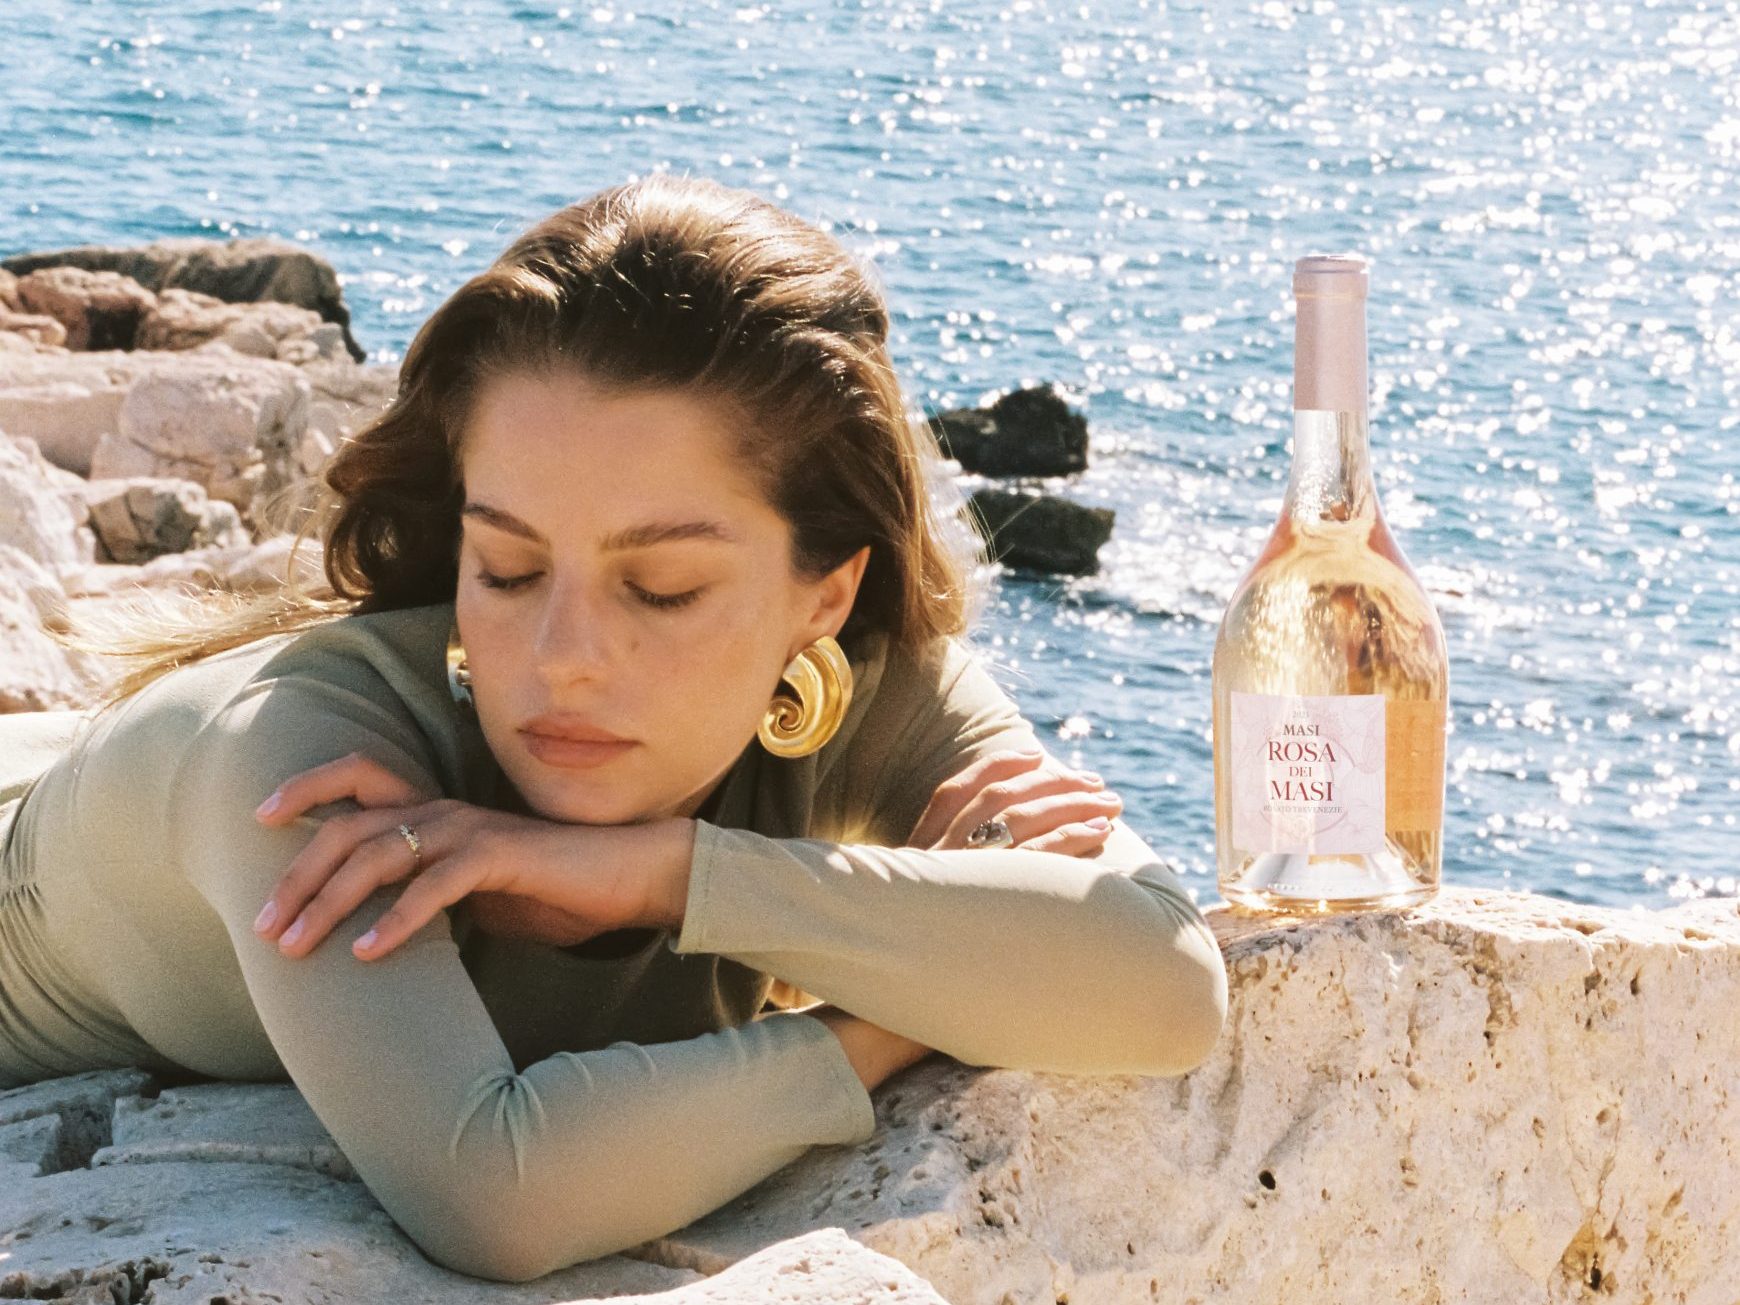 一位身穿绿色上衣的女士坐在海边的白色岩石上。旁边的岩石上放着一瓶 Rosa dei Masi。